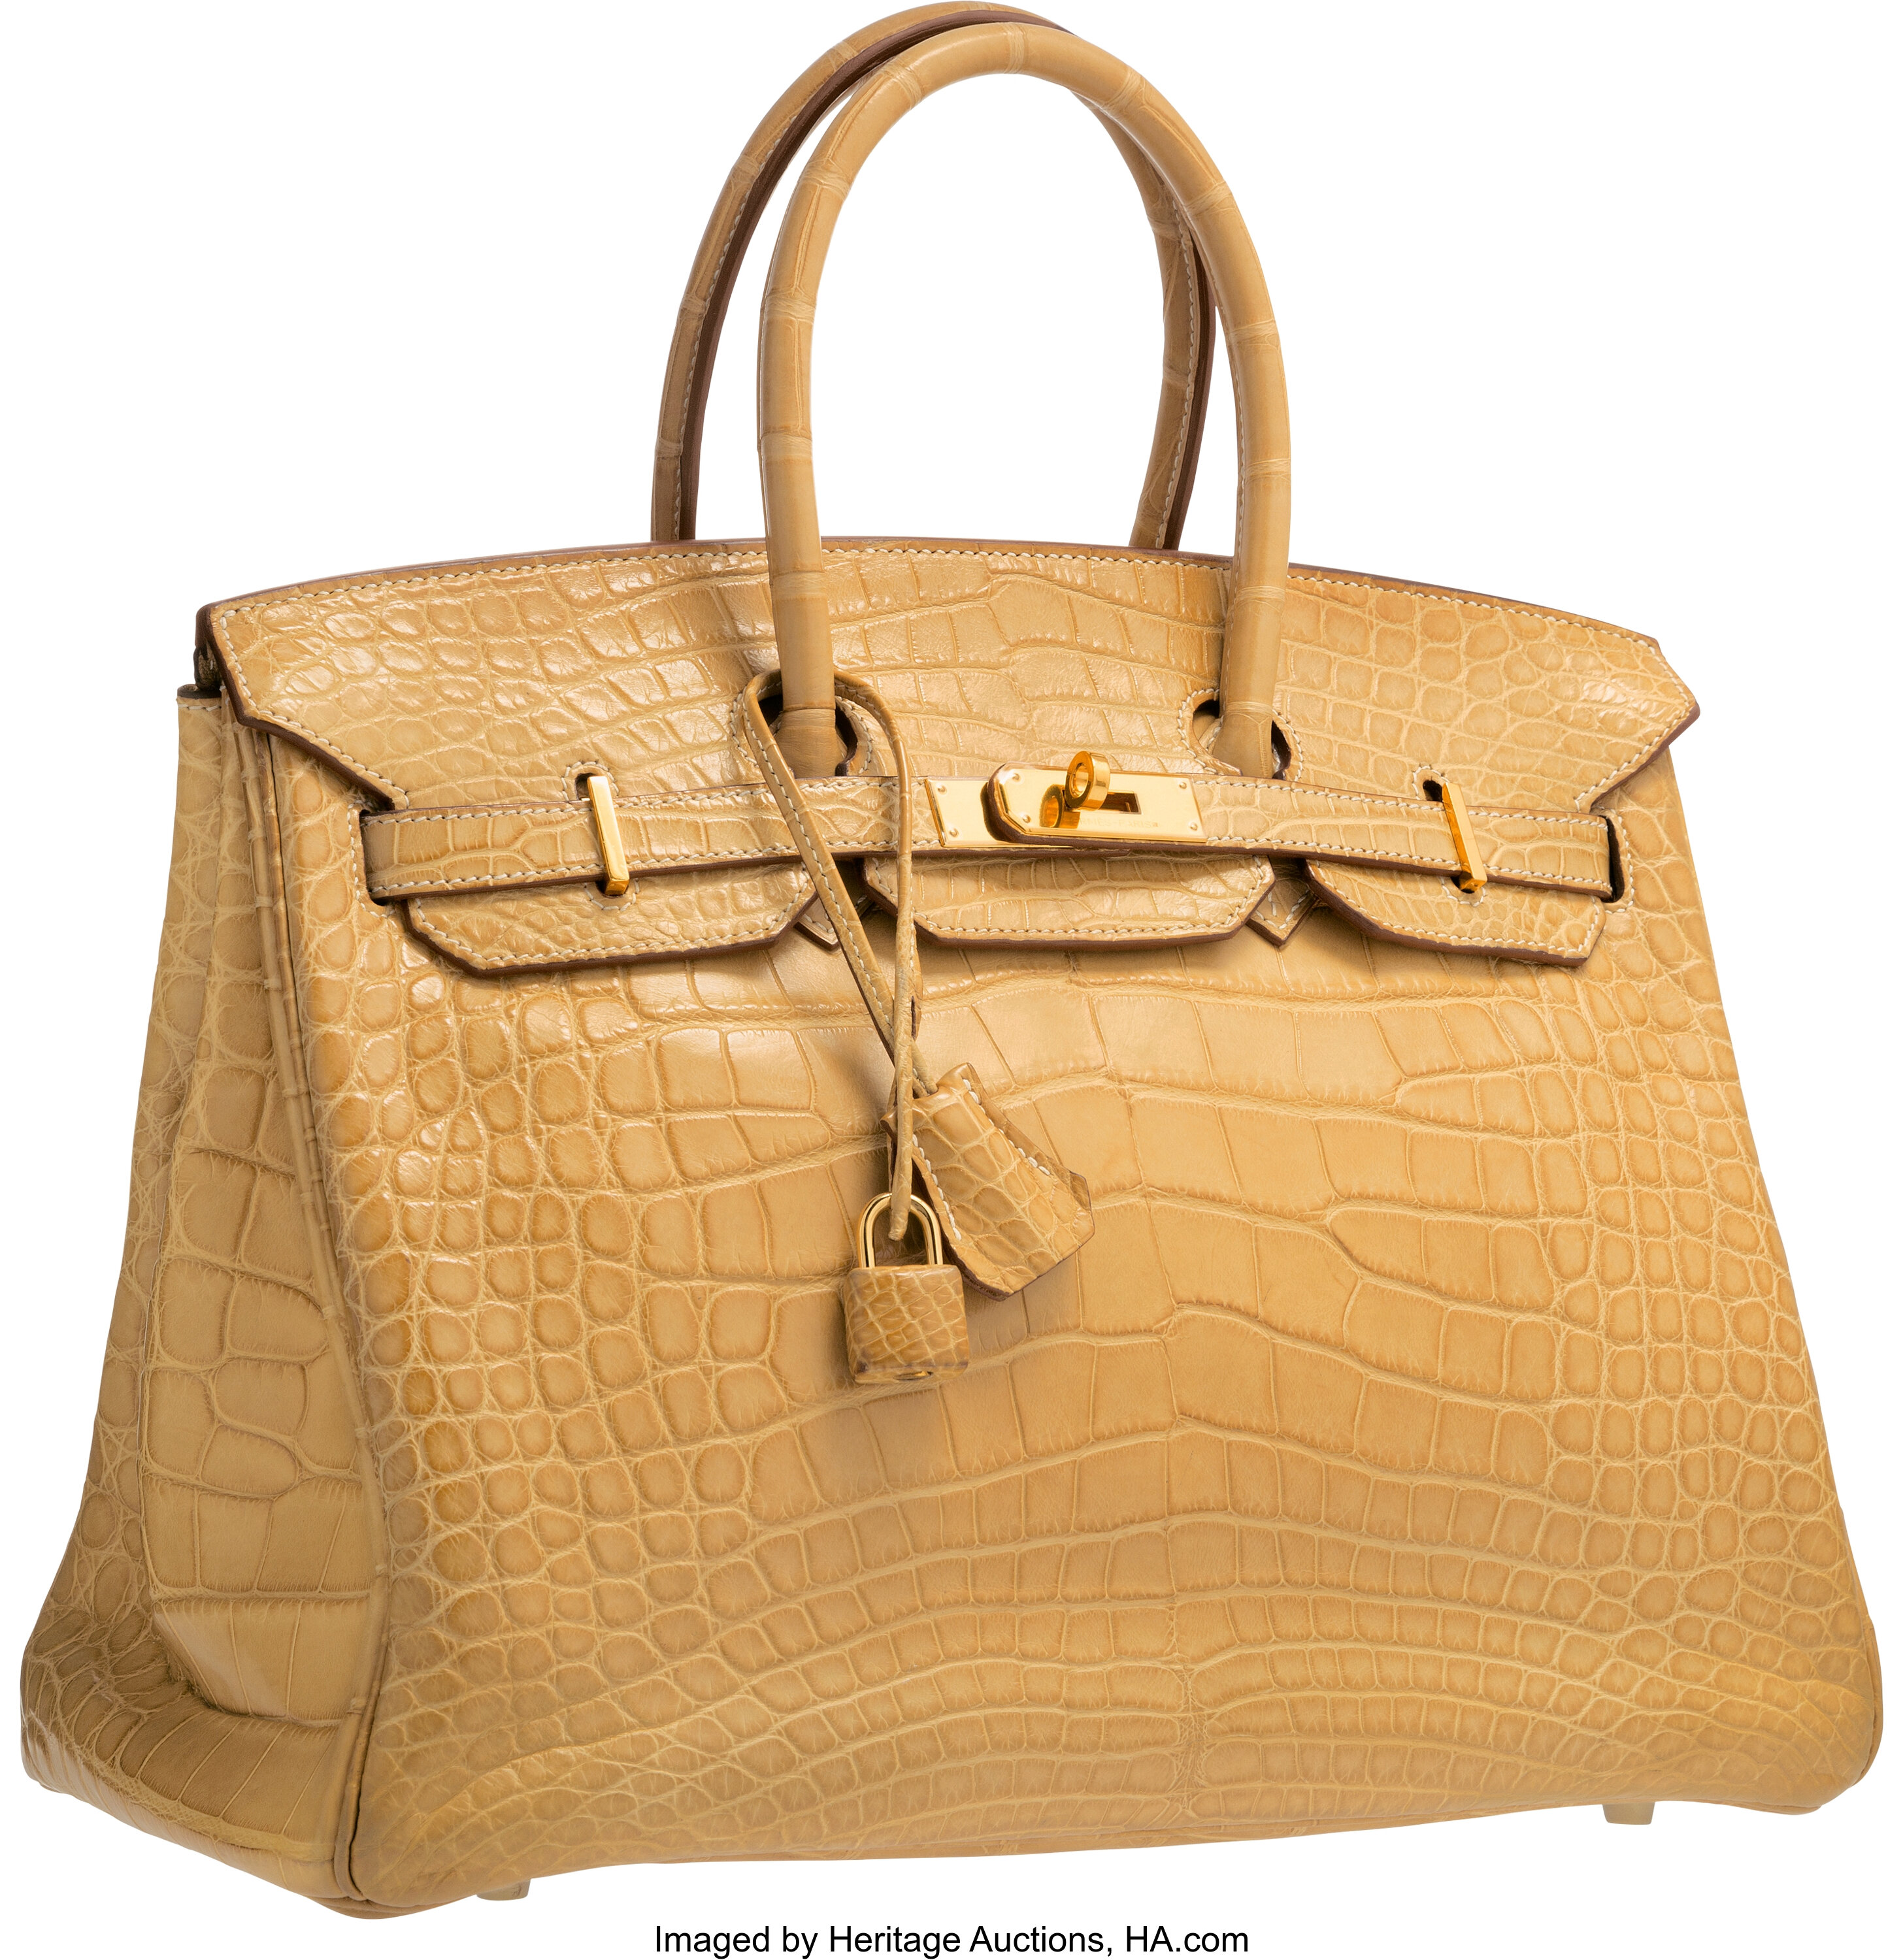 Hermes Birkin Bag, Kraft, 35cm, with Gold - Bags of Luxury